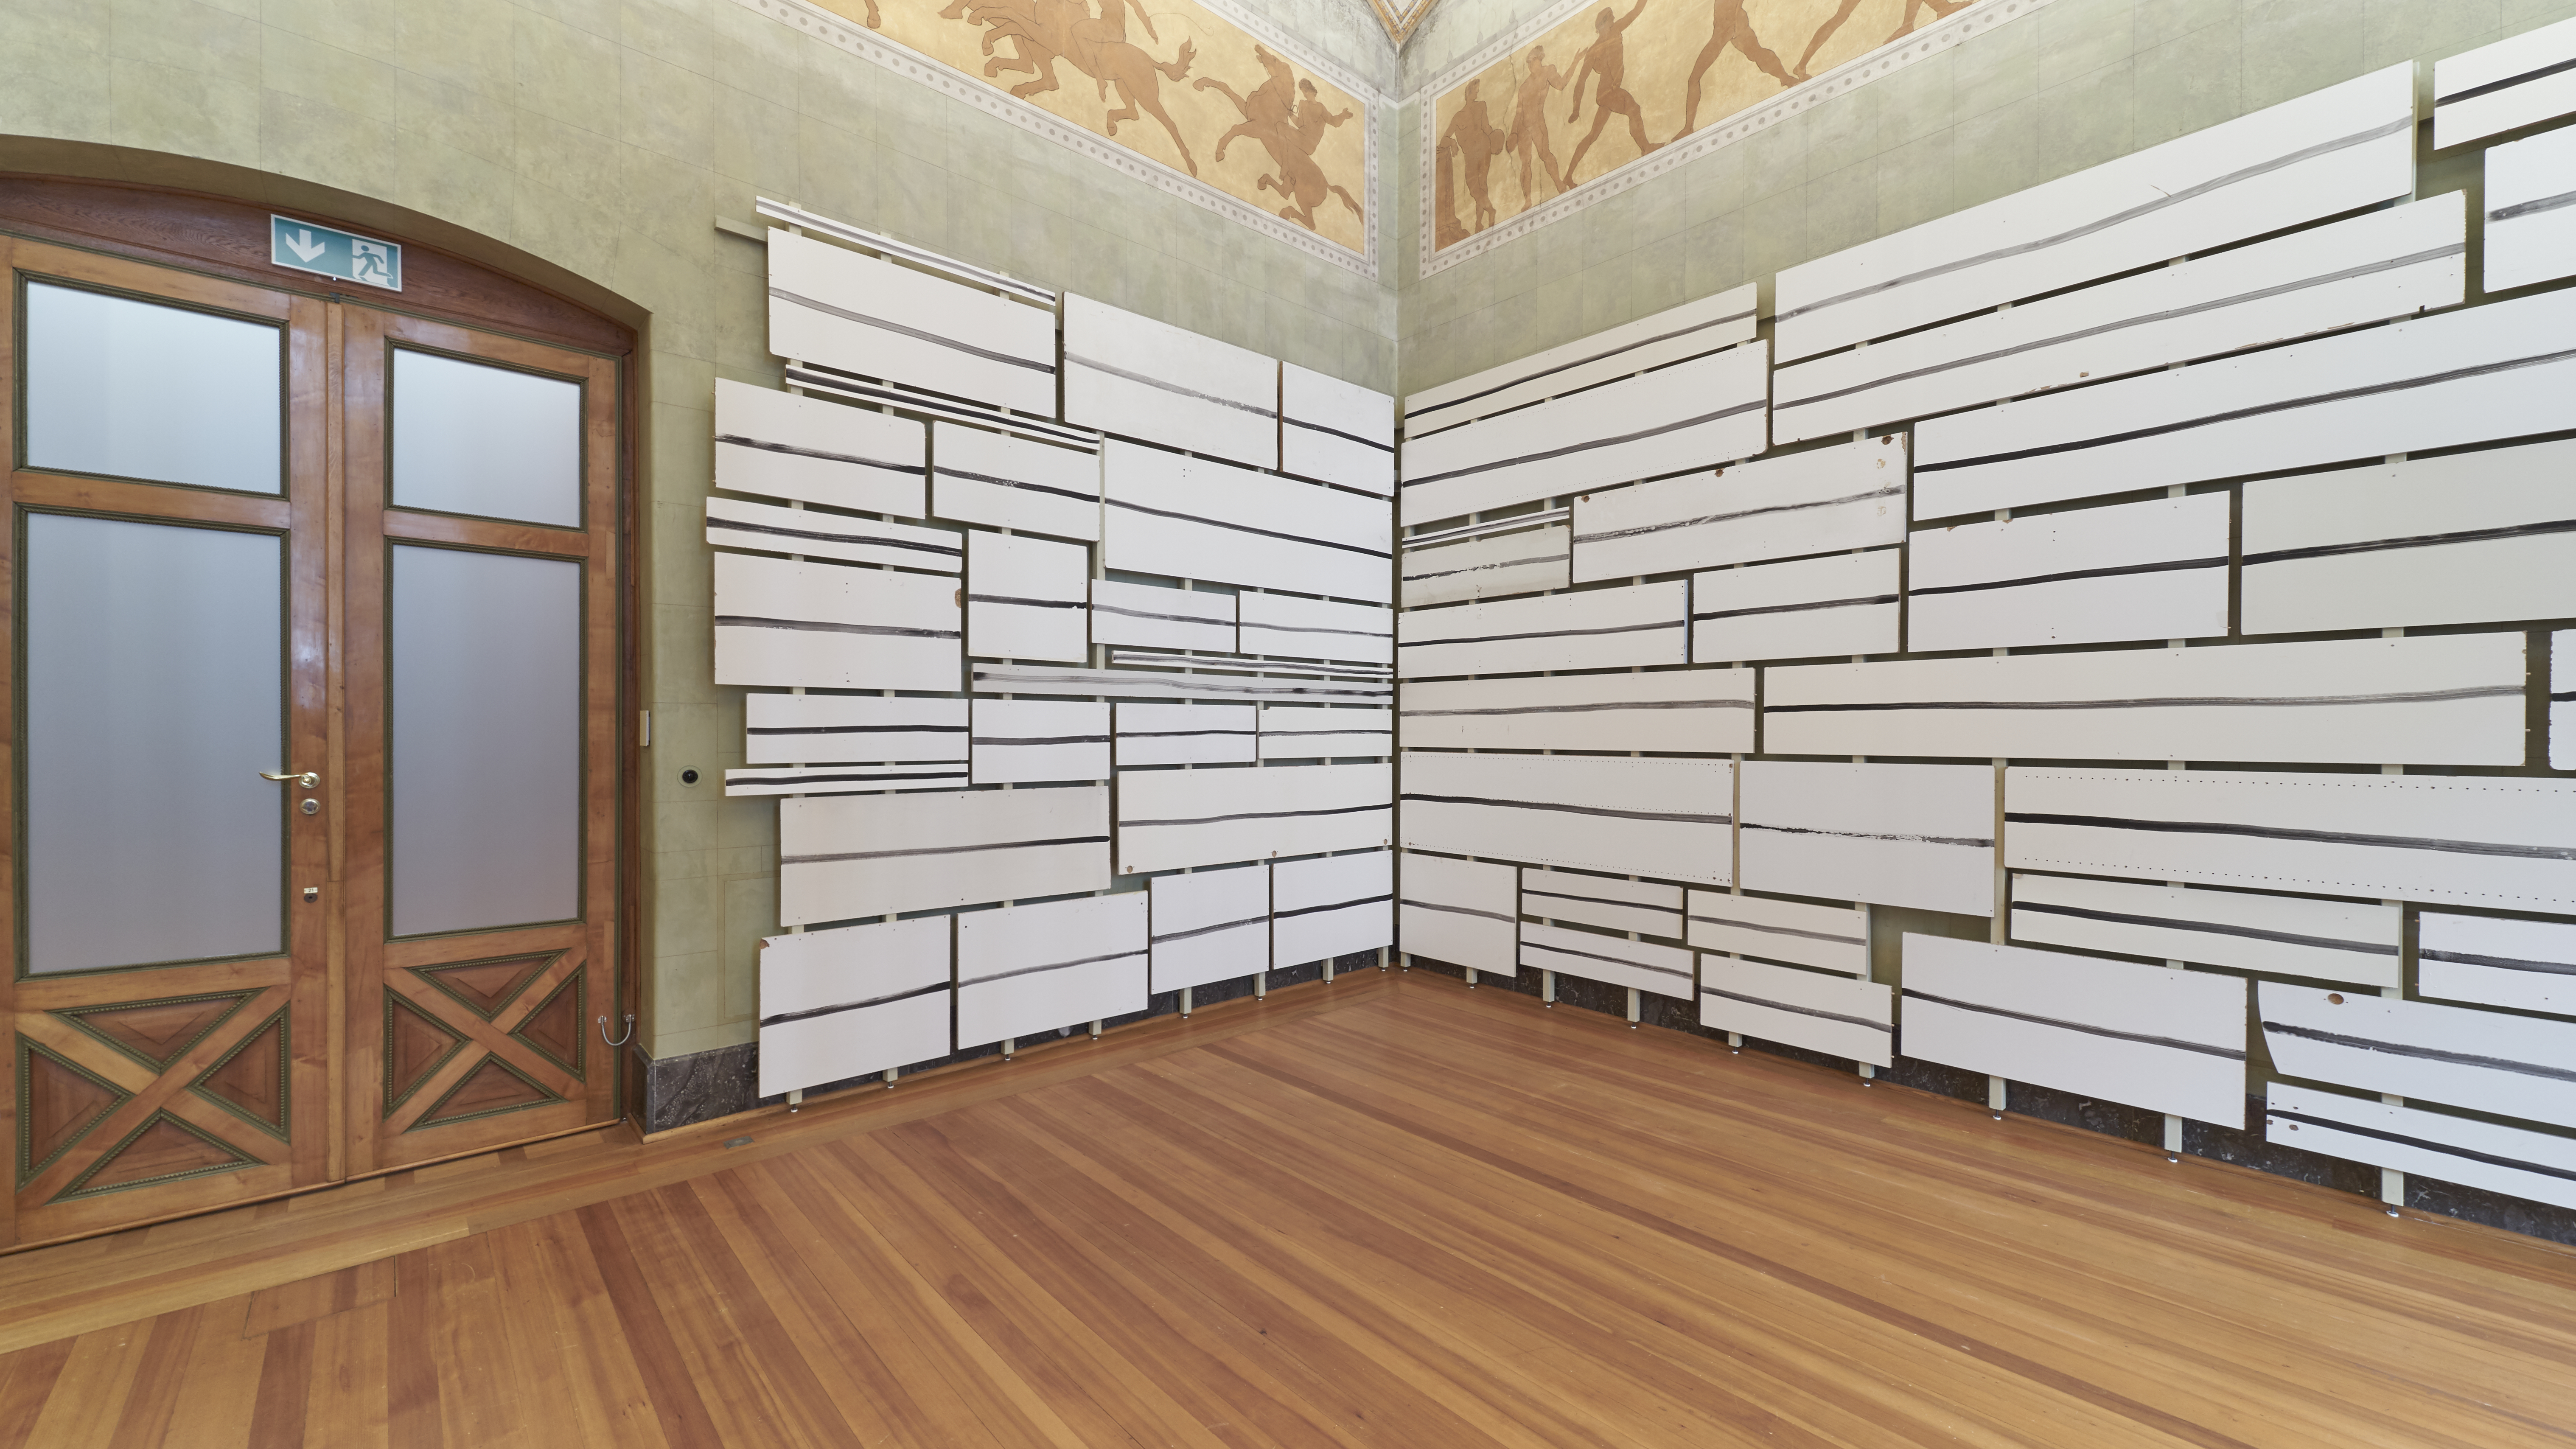 Abbildung der Rauminstallation "To have a shelf life". Sie besteht aus weißen Paneelen, die an der Wand befestigt sind.